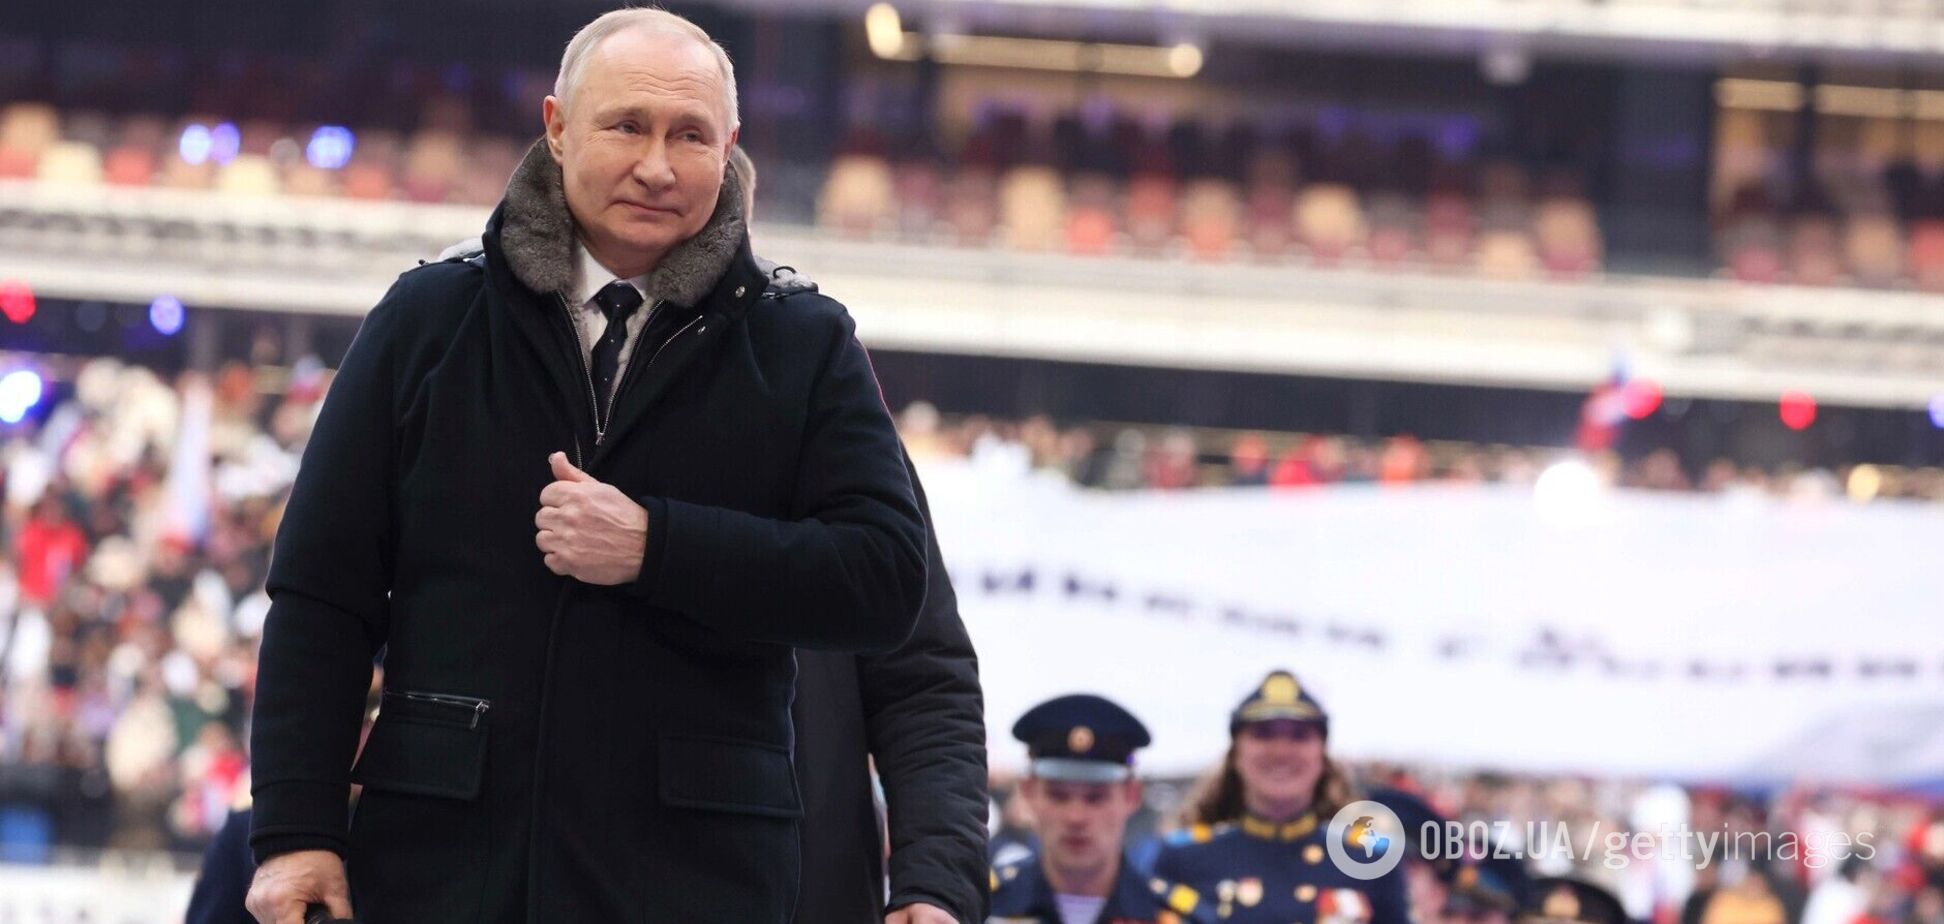 'Неудобно разговаривать с рабами'. Долгополов – о том, что сделал Путин на митинге в Москве